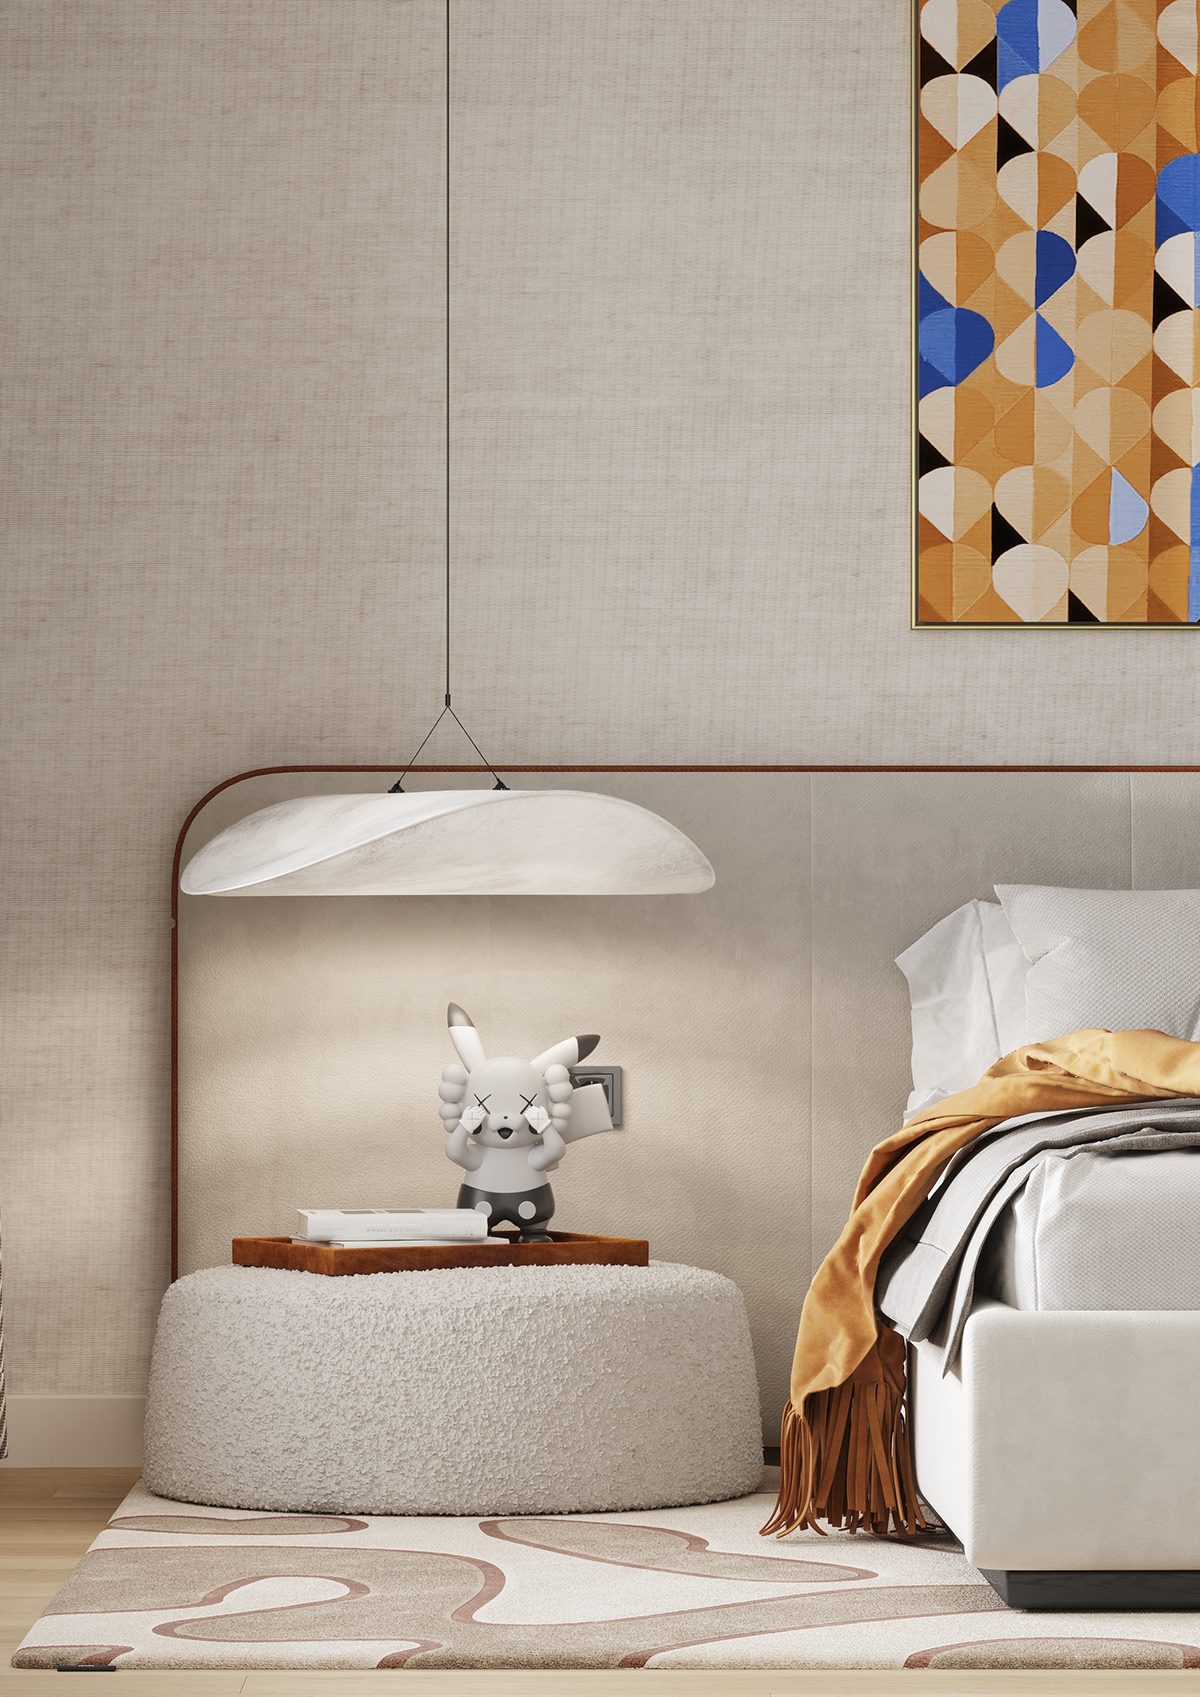 bedroom design Interior Render visualization 3ds max corona CGI interior design  modern architecture